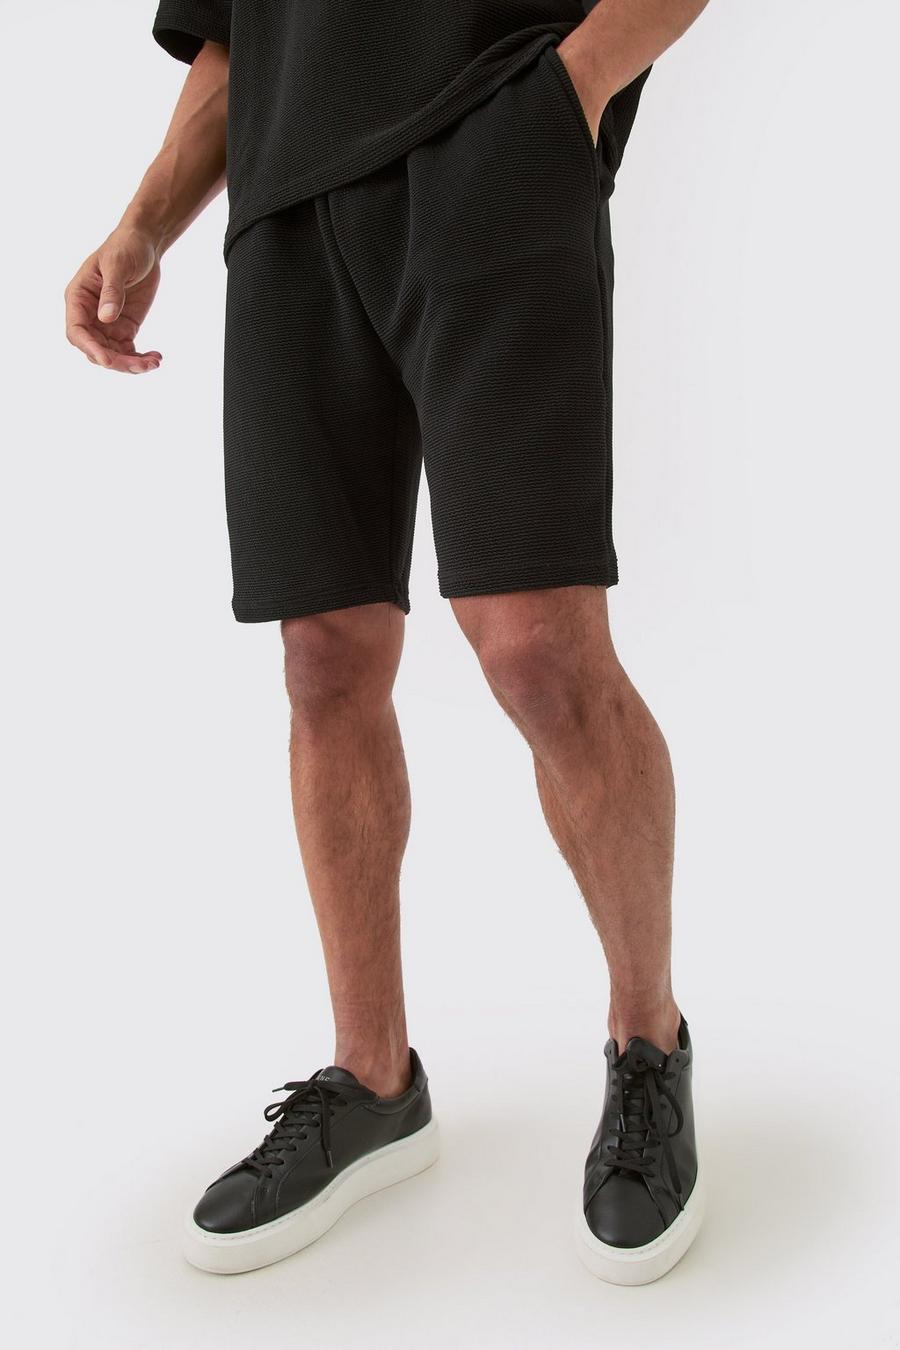 Lockere mittellange strukturierte Shorts, Black